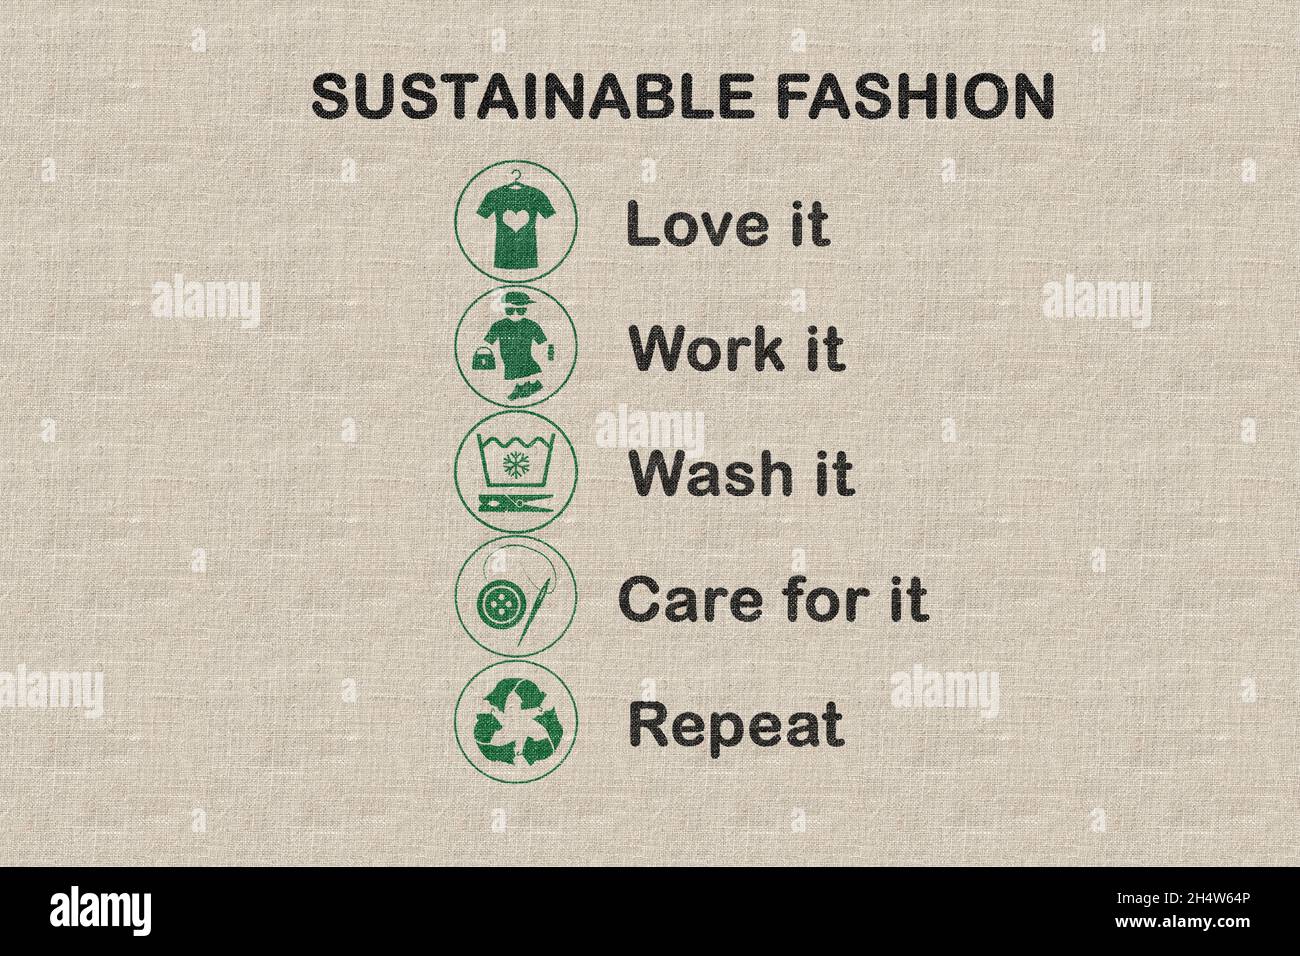 Nachhaltige Mode-Ikone auf Stoff, mit dem es getragen, gearbeitet, geliebt, gewaschen, gepflegt wird, Wiederhole die Symbole, um Kleidung nachhaltig zu gestalten Stockfoto